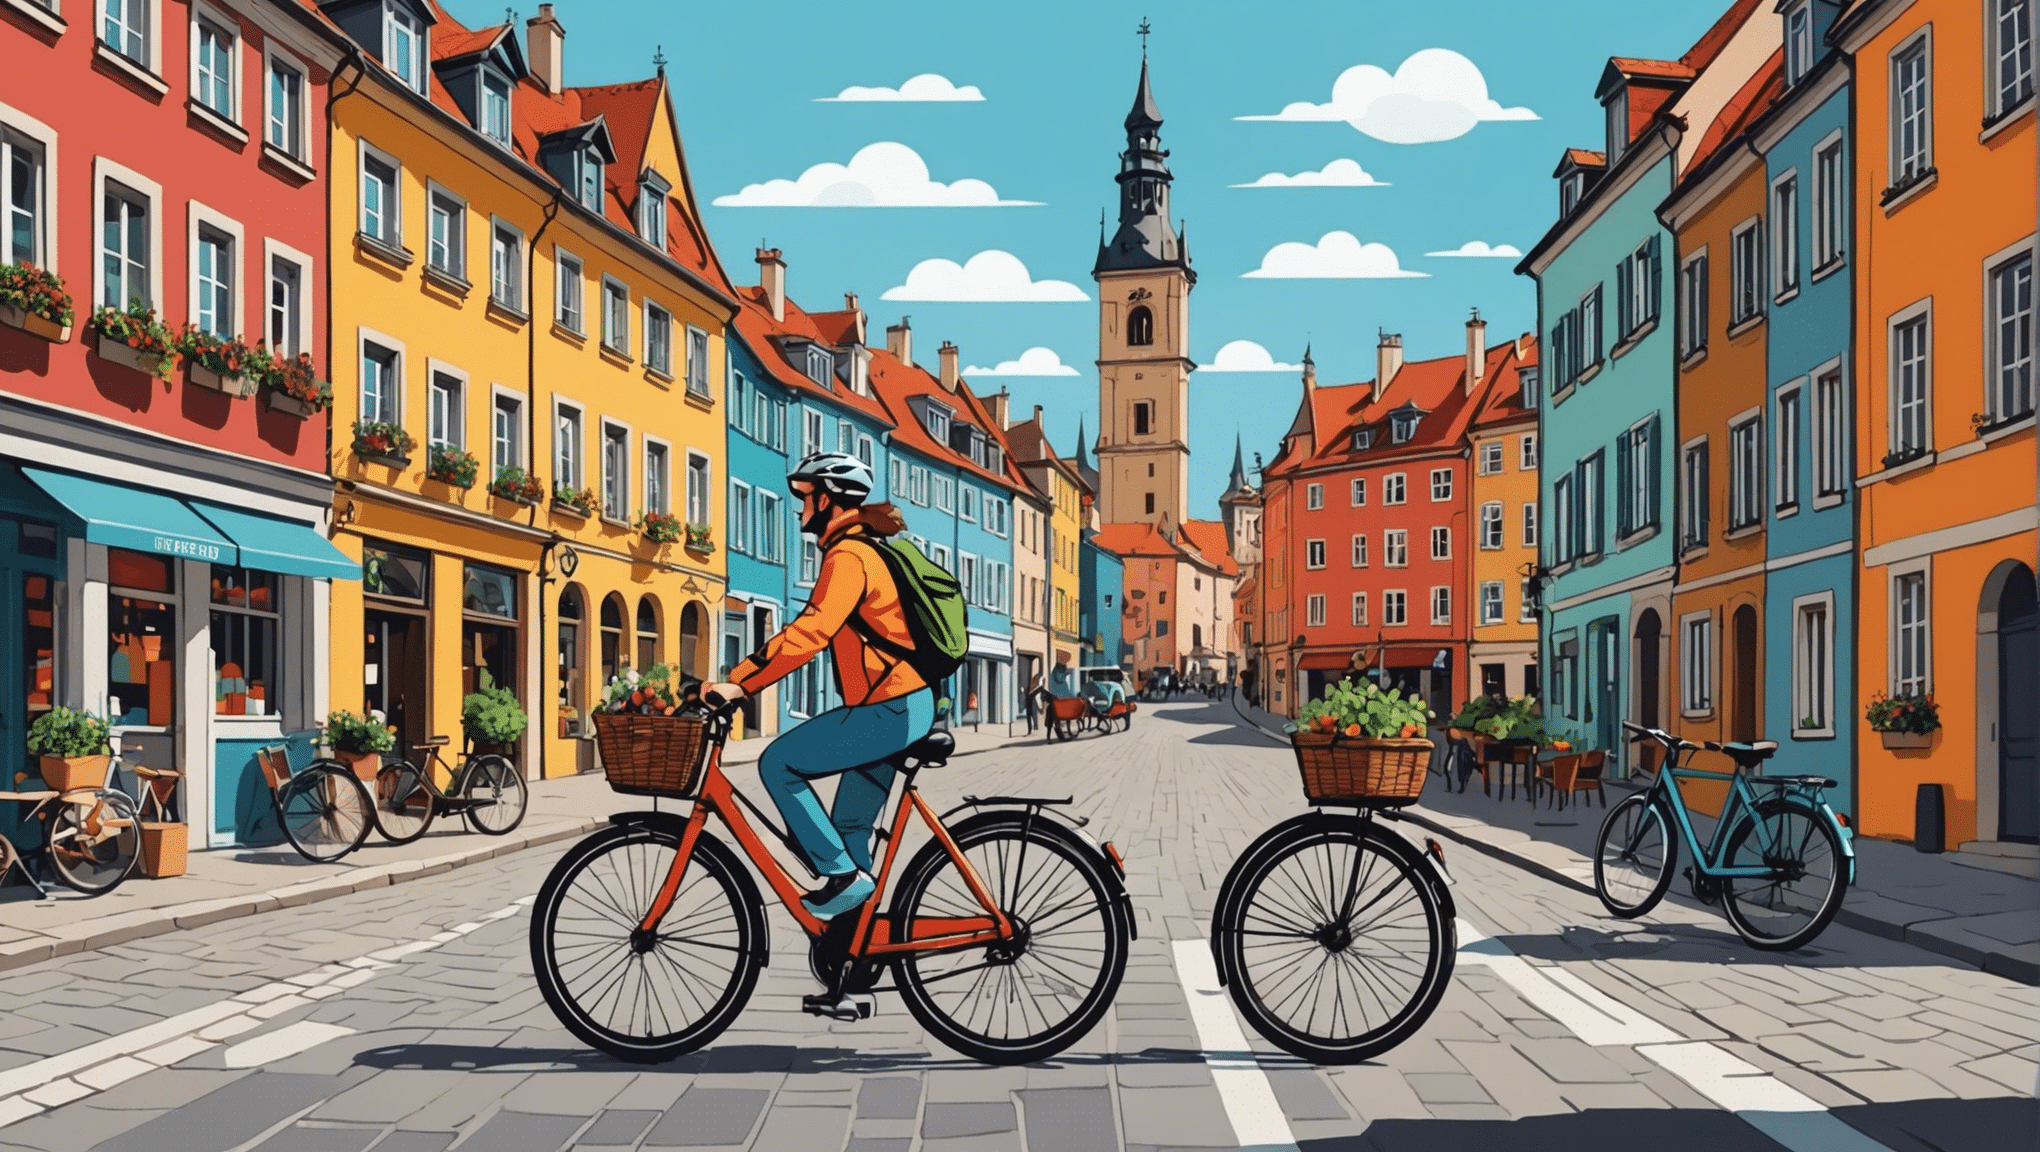 descubra os destinos imperdíveis para os entusiastas das viagens de bicicleta na Europa. Explore o continente de bicicleta e desfrute de uma experiência única.